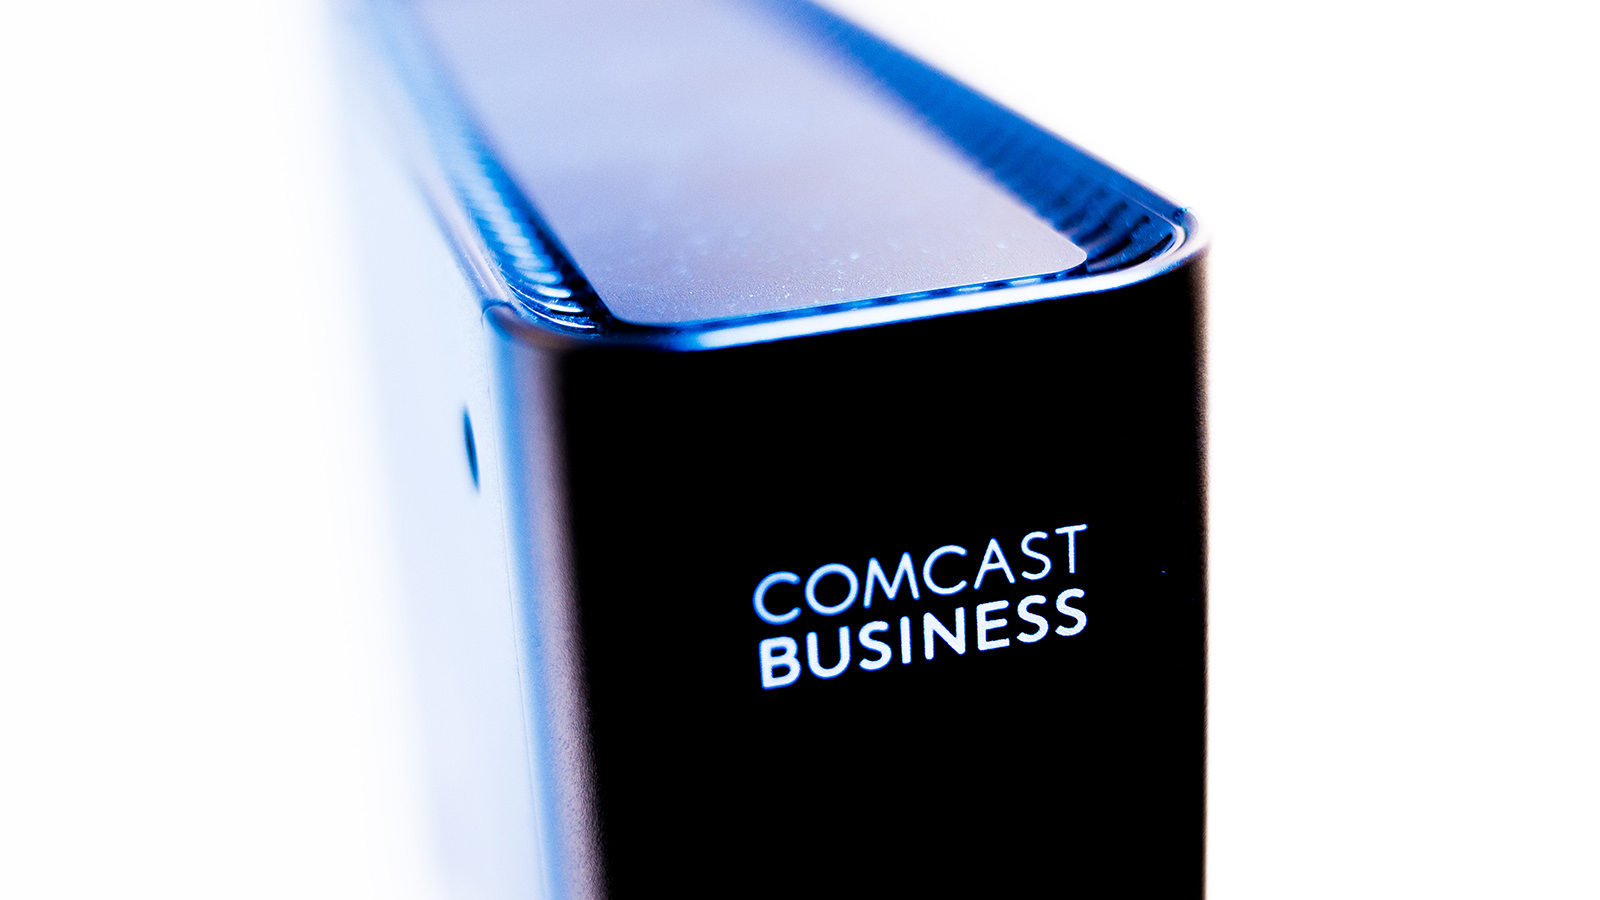 comcast business